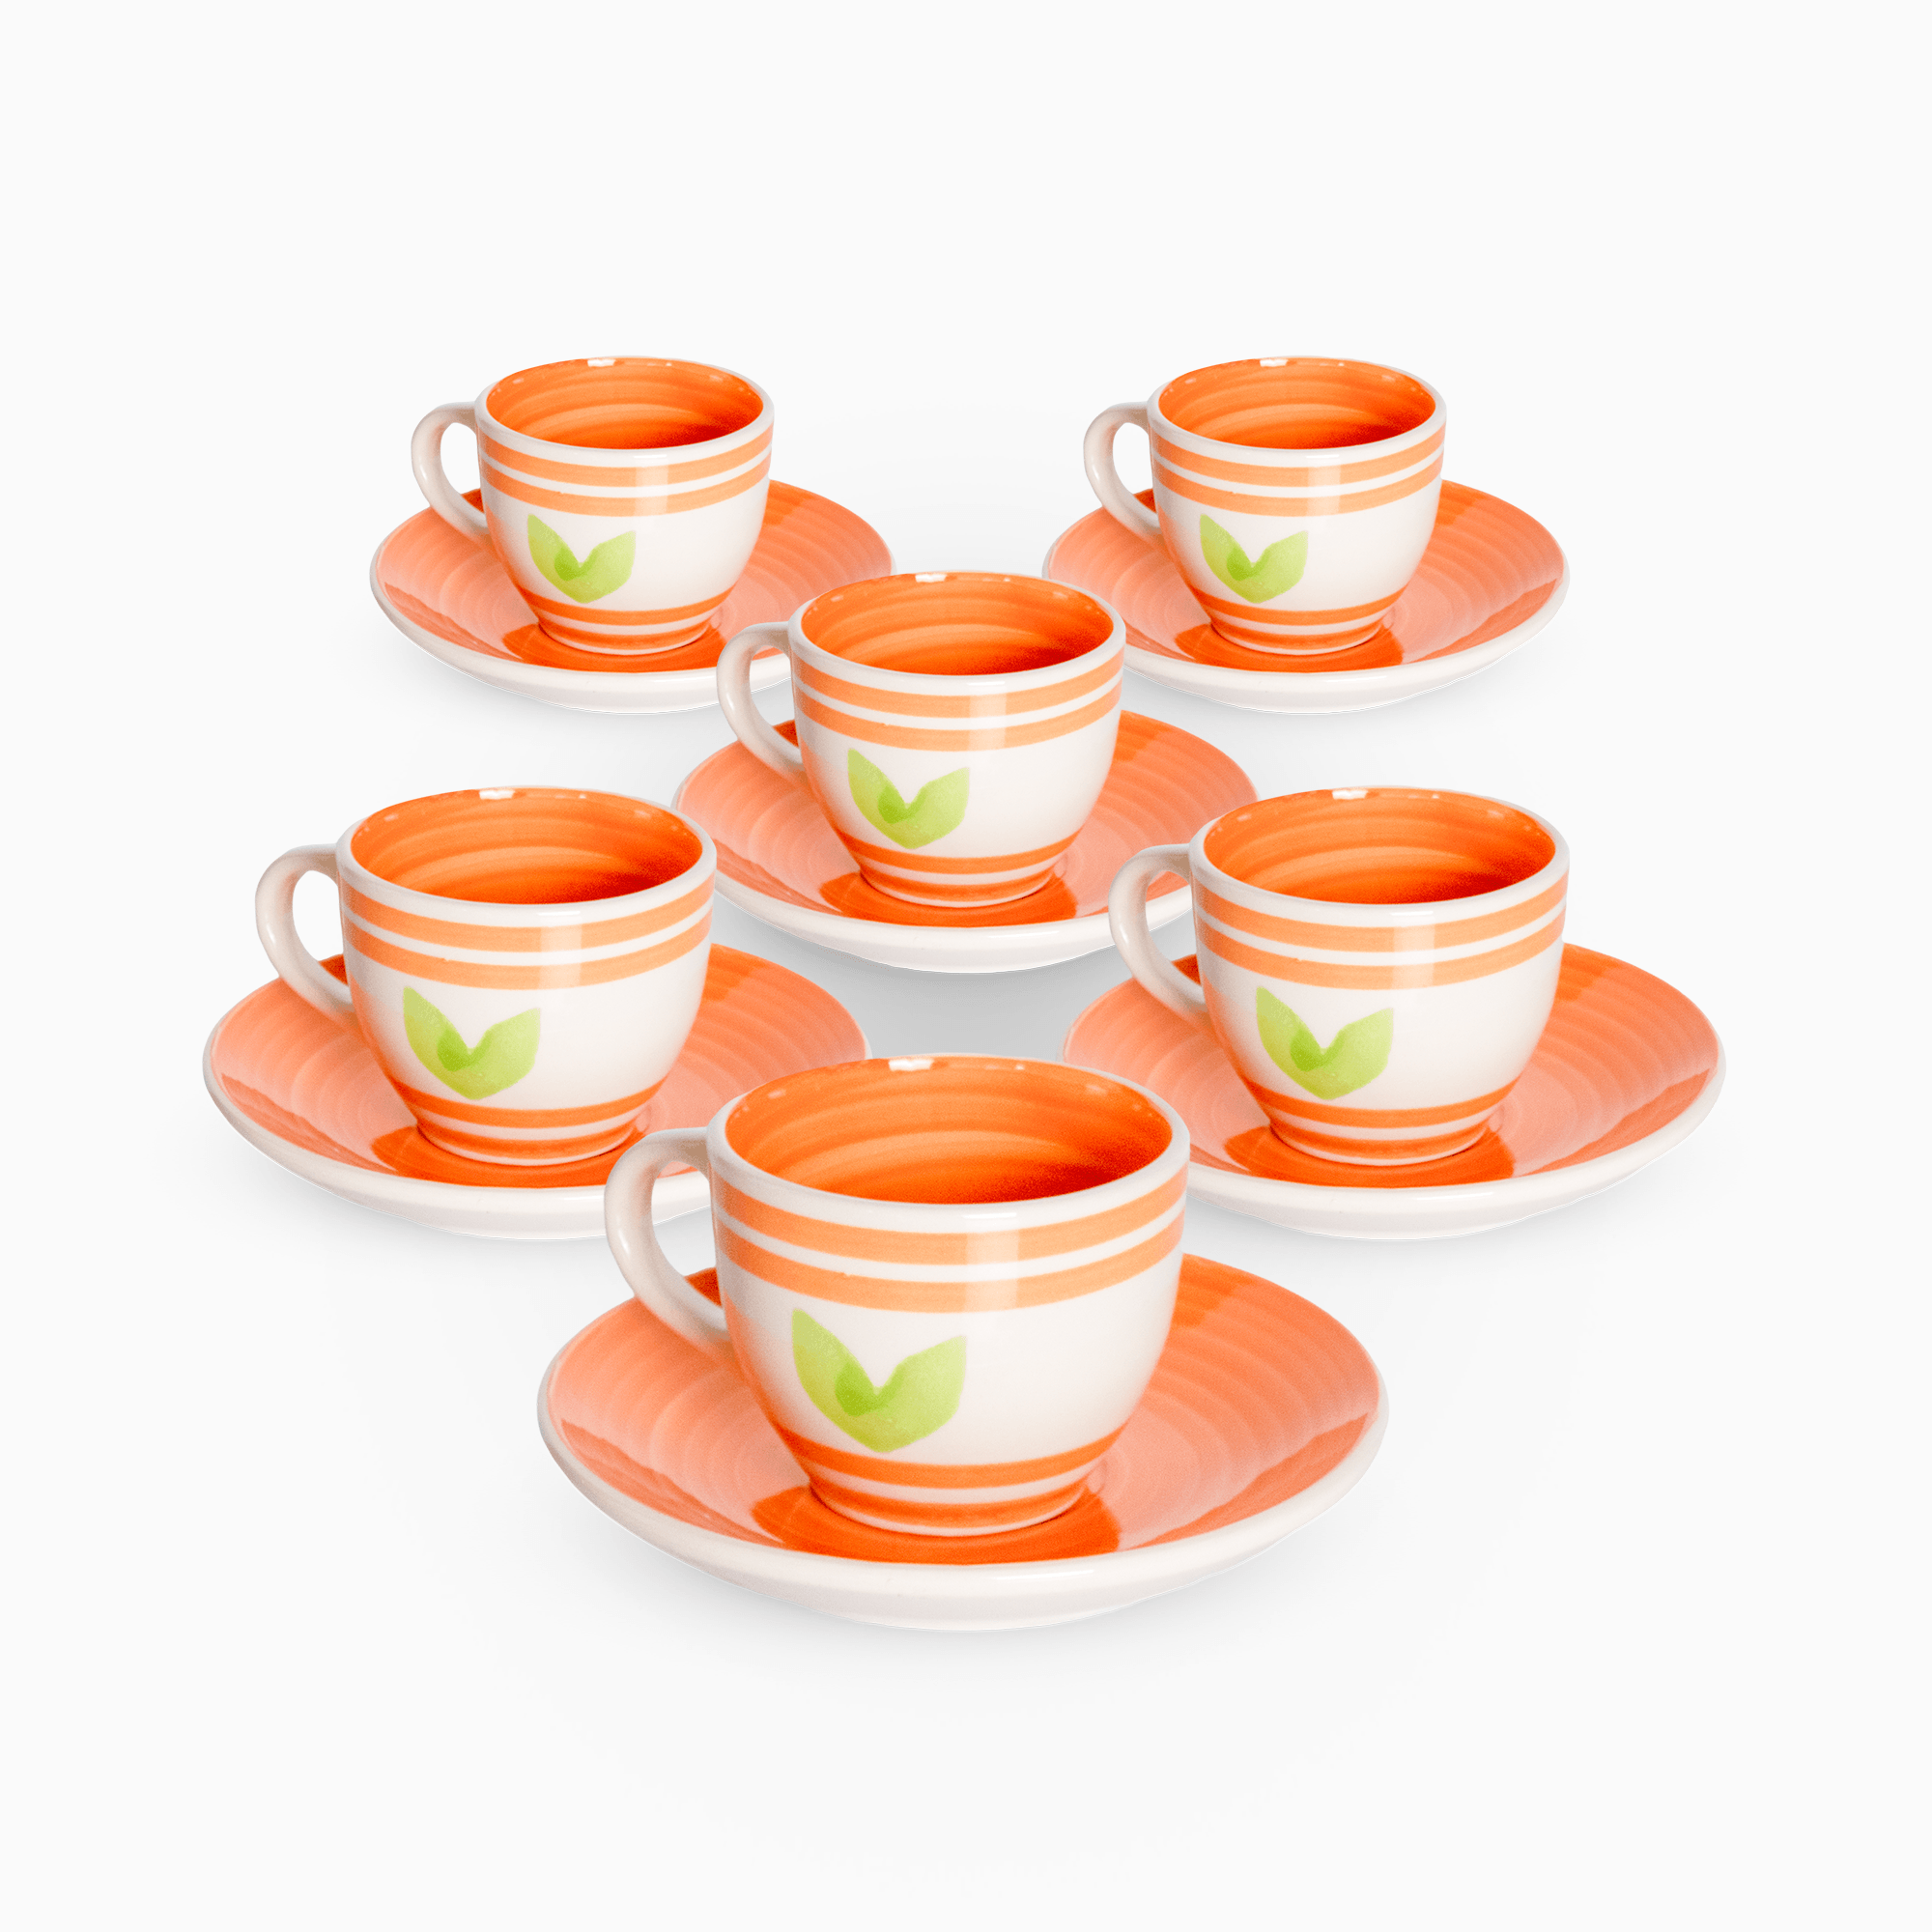 Servizio 6 Tazzine Caffe' In Porcellana E piattino Linea Flower Orange –  Albalu Bomboniere